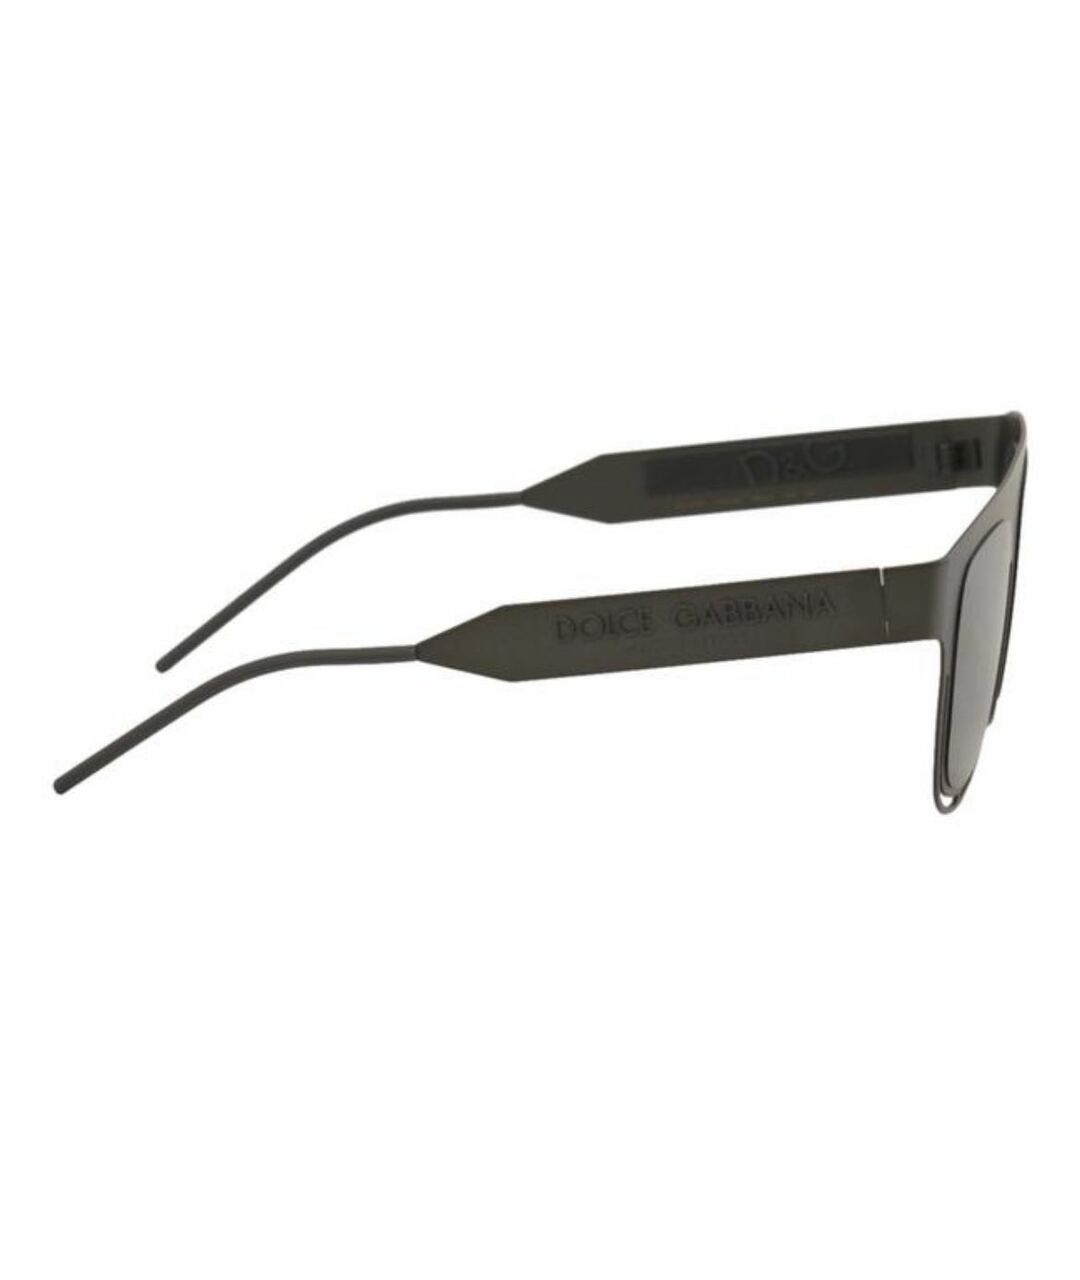 DOLCE&GABBANA Антрацитовые металлические солнцезащитные очки, фото 3